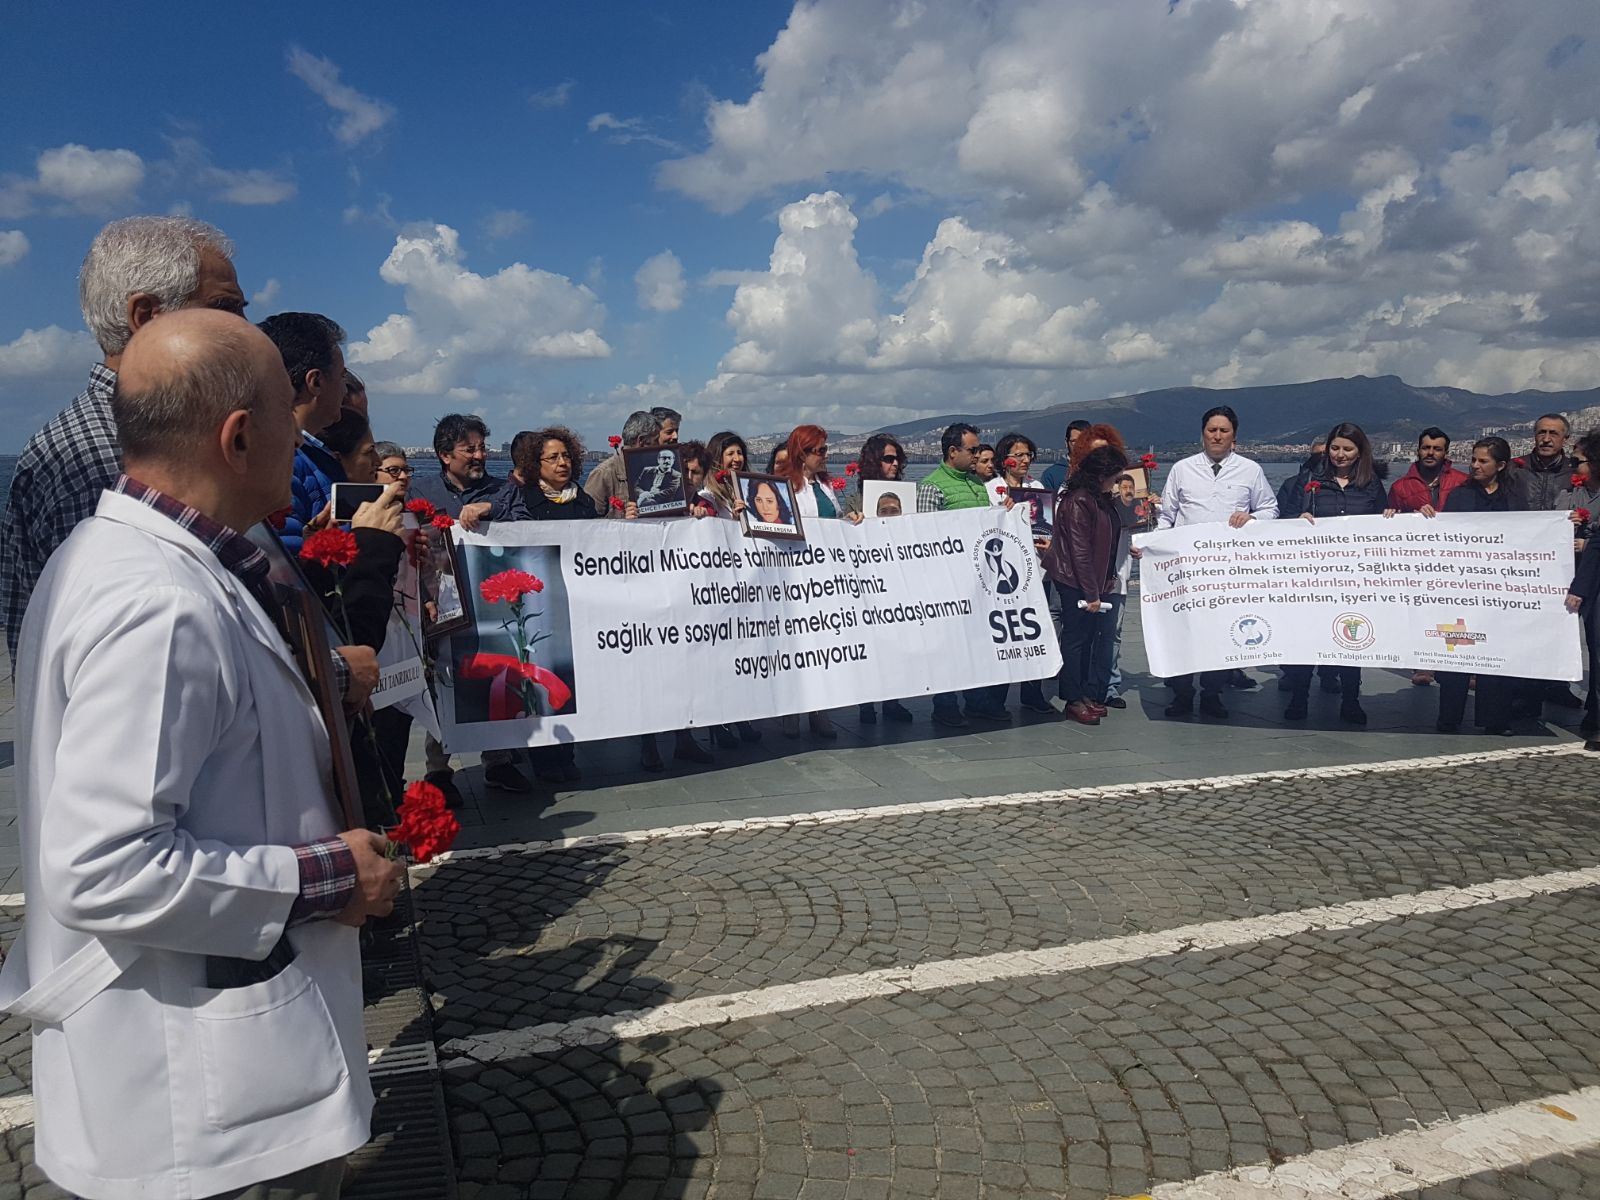 İzmir Şubemiz Katledilen ve Kaybettiğimiz Sağlık ve Sosyal Hizmet Emekçilerini Denize Karanfil Bırakarak Andı